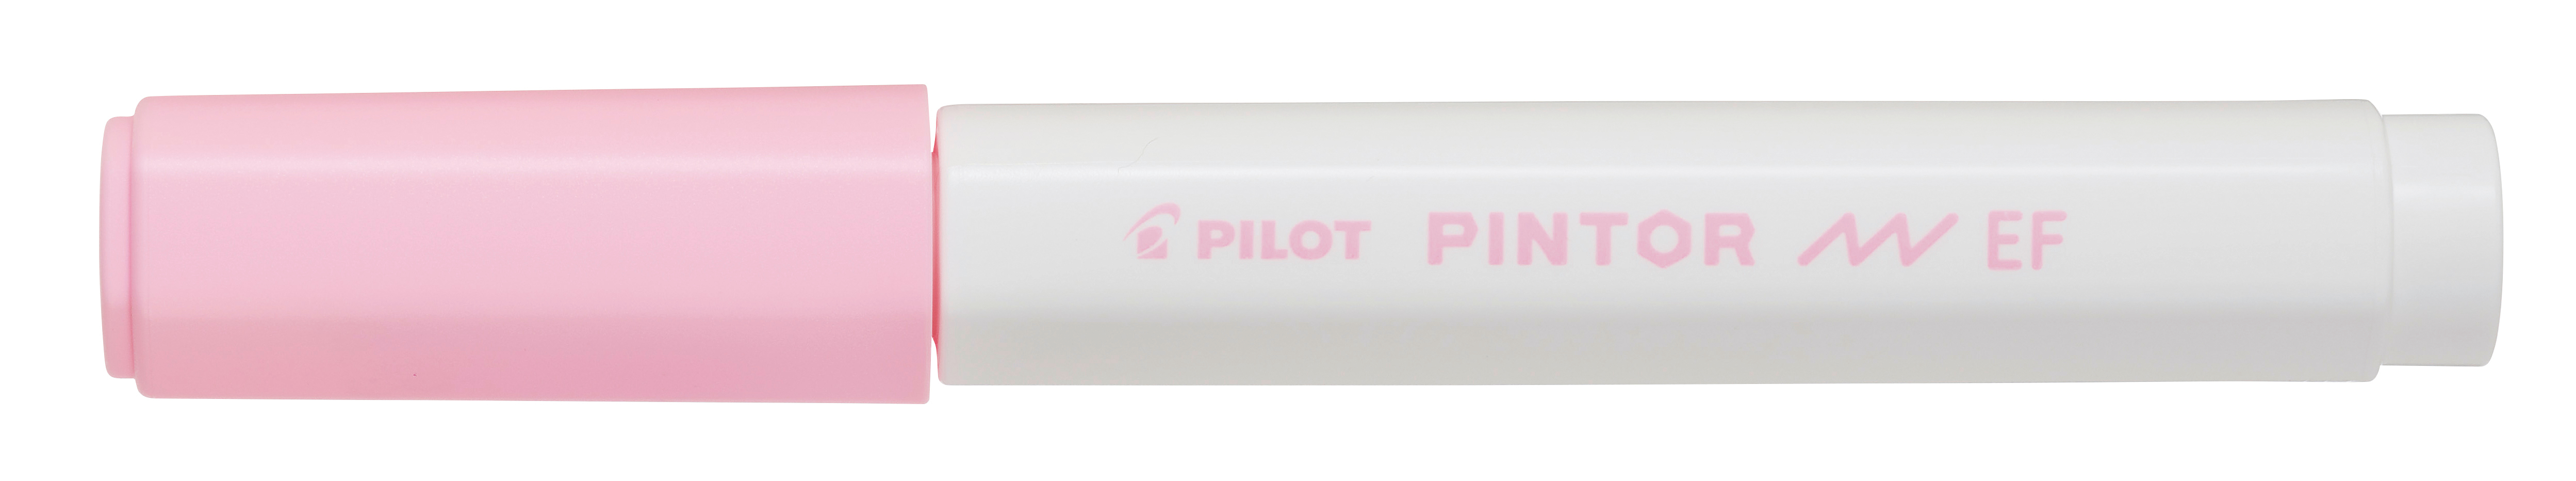 PILOT Marker Pintor 0.7mm SW-PT-EF-PP pastell pink